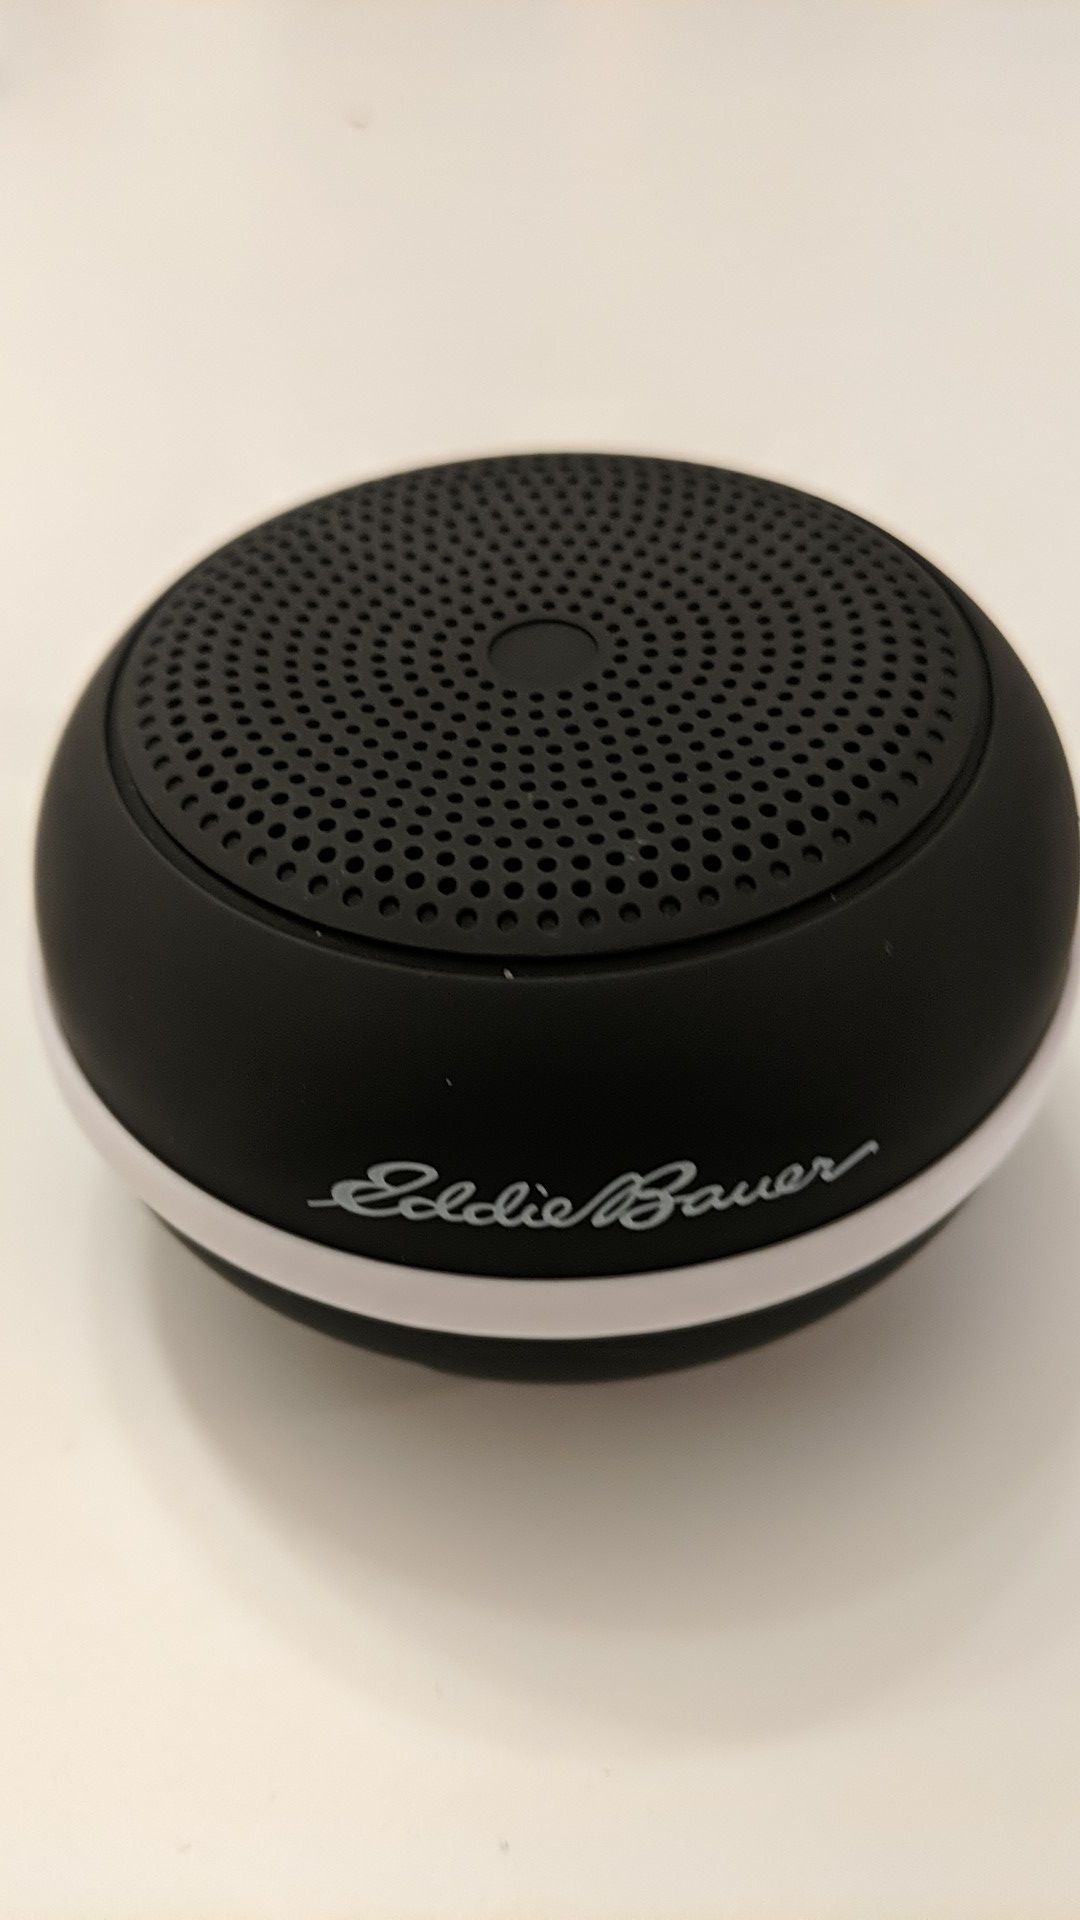 Eddie Bauer Portable Bluetooth Speaker